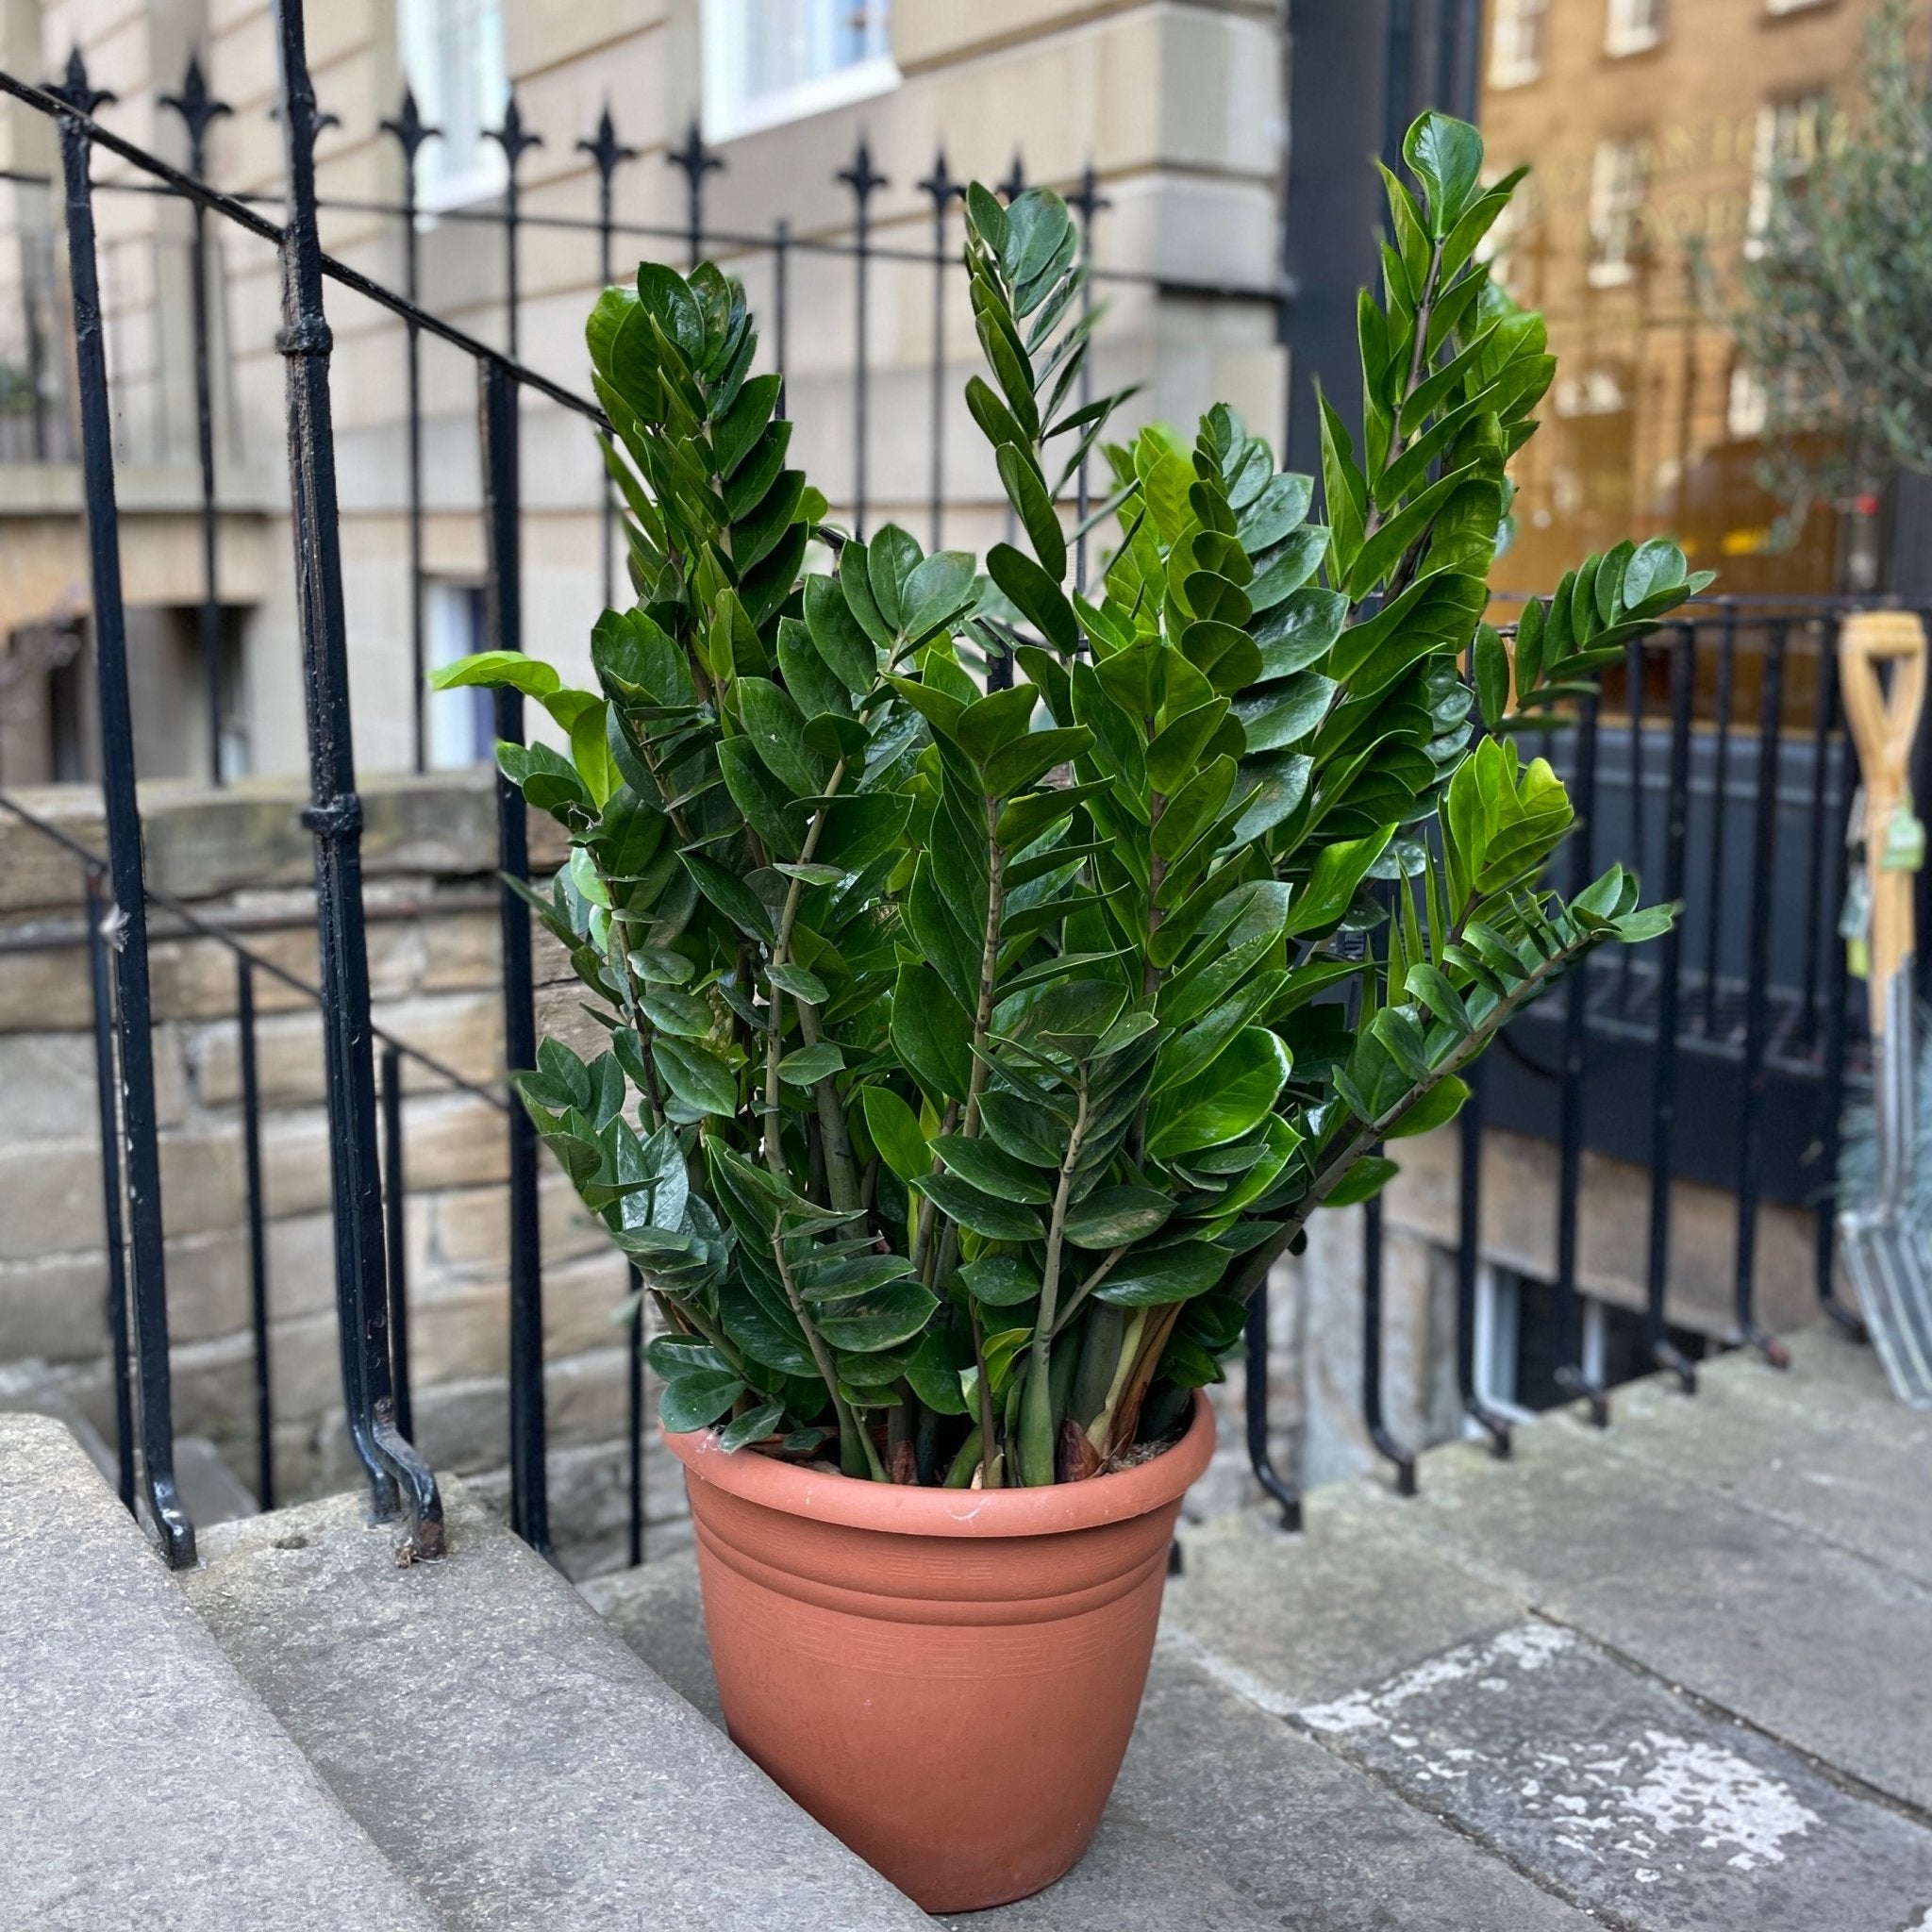 Zamioculcas zamiifolia (37cm pot) - grow urban. UK